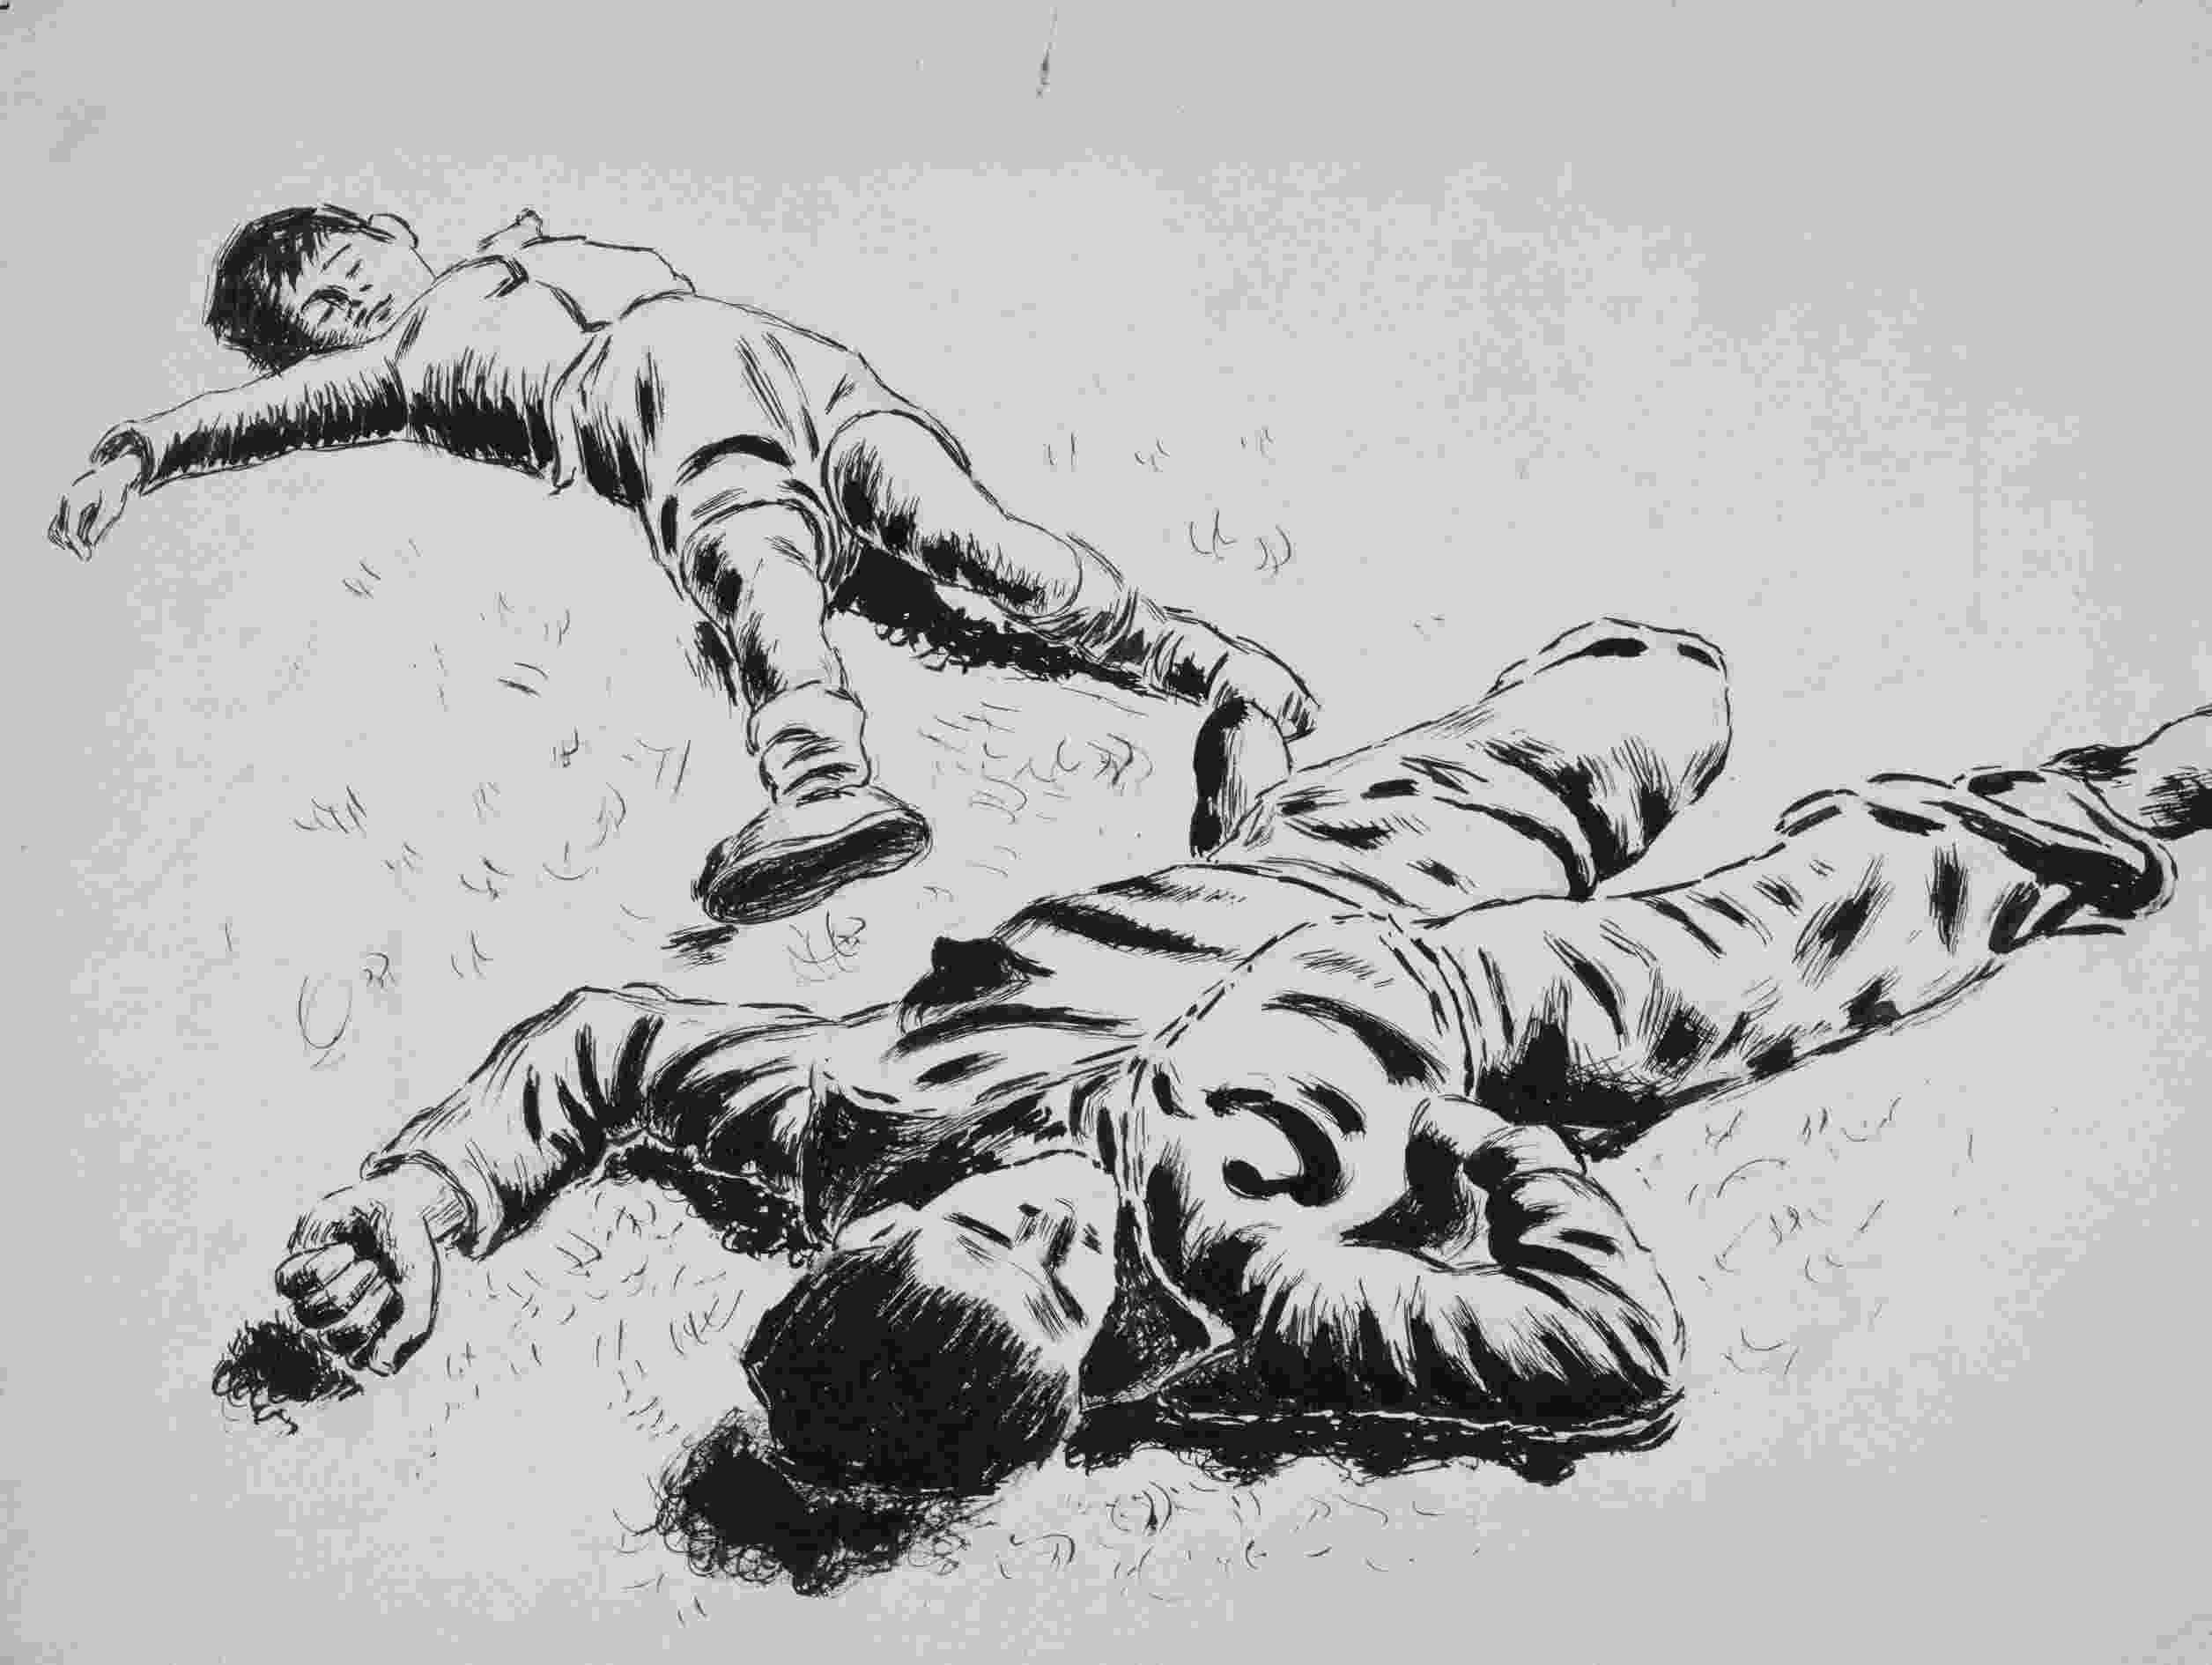 imagenes de soldados para dibujar horacio ferrer niños muertos en el suelo dead children dibujar de soldados imagenes para 